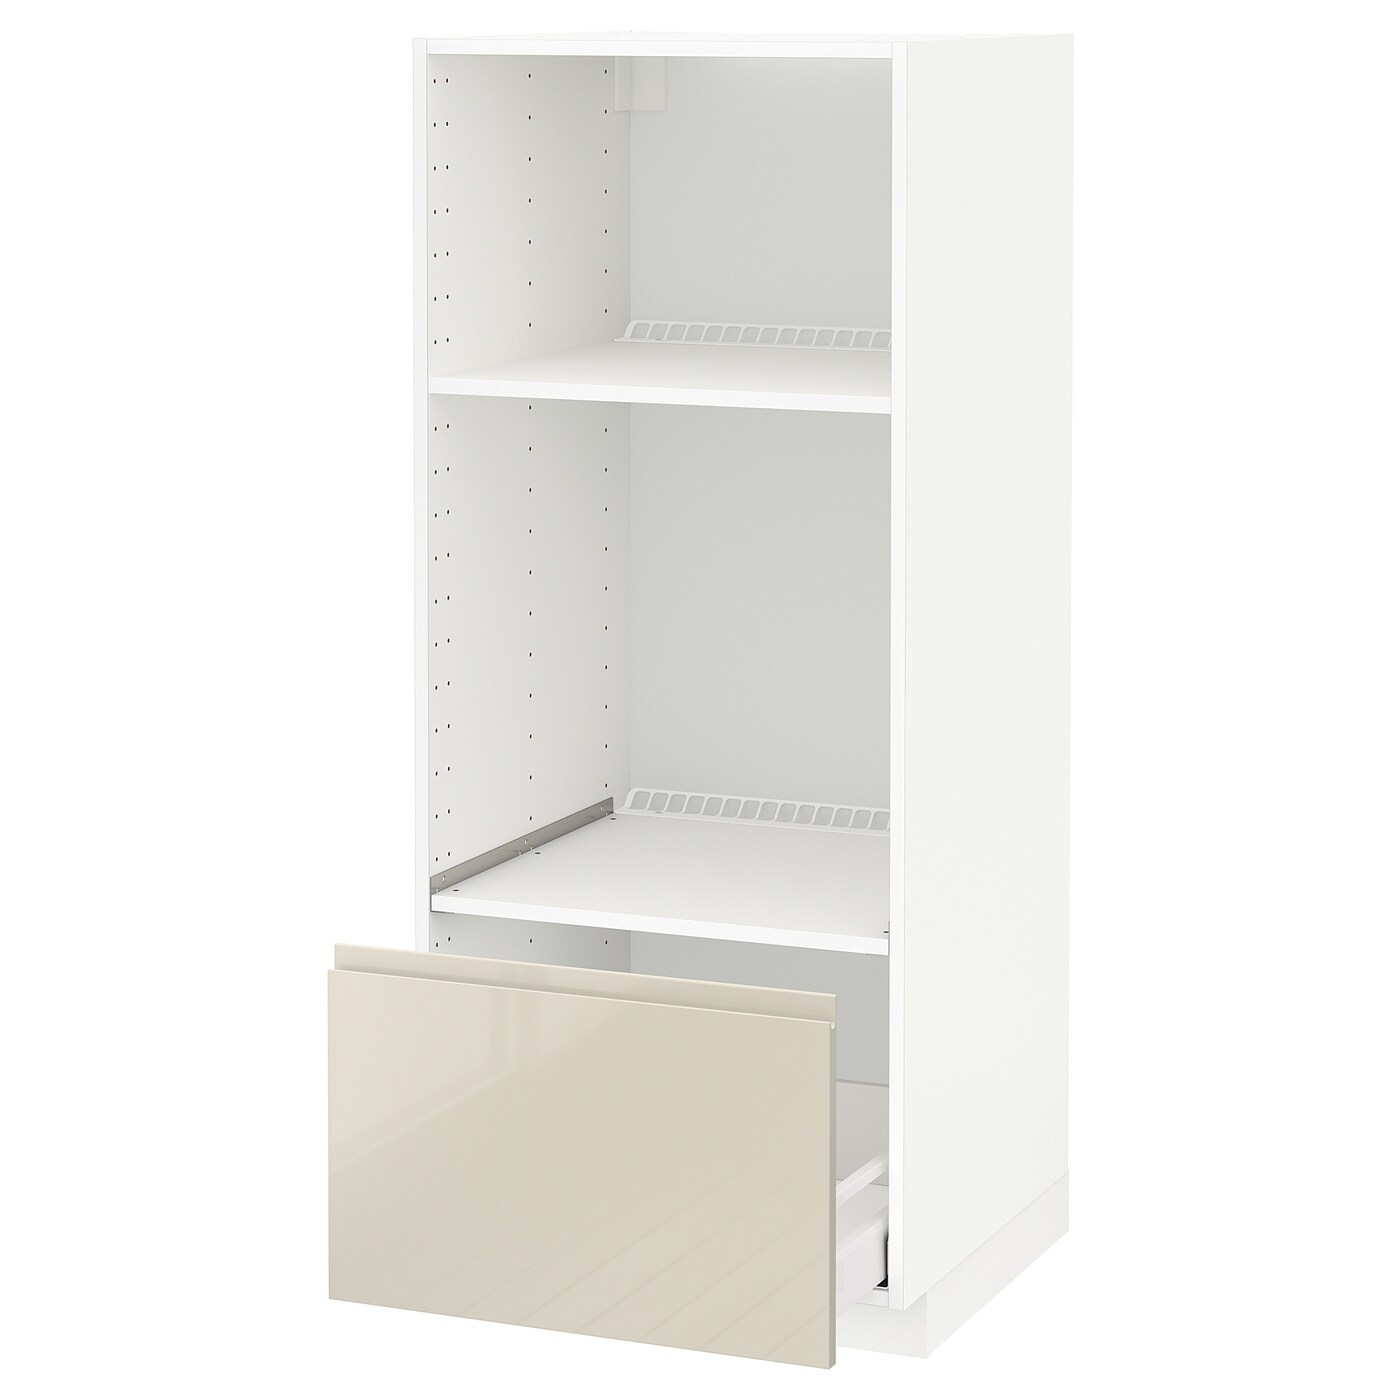 Напольный шкаф  - IKEA METOD MAXIMERA, 148x62,1x60см, белый/бежевый, МЕТОД МАКСИМЕРА ИКЕА